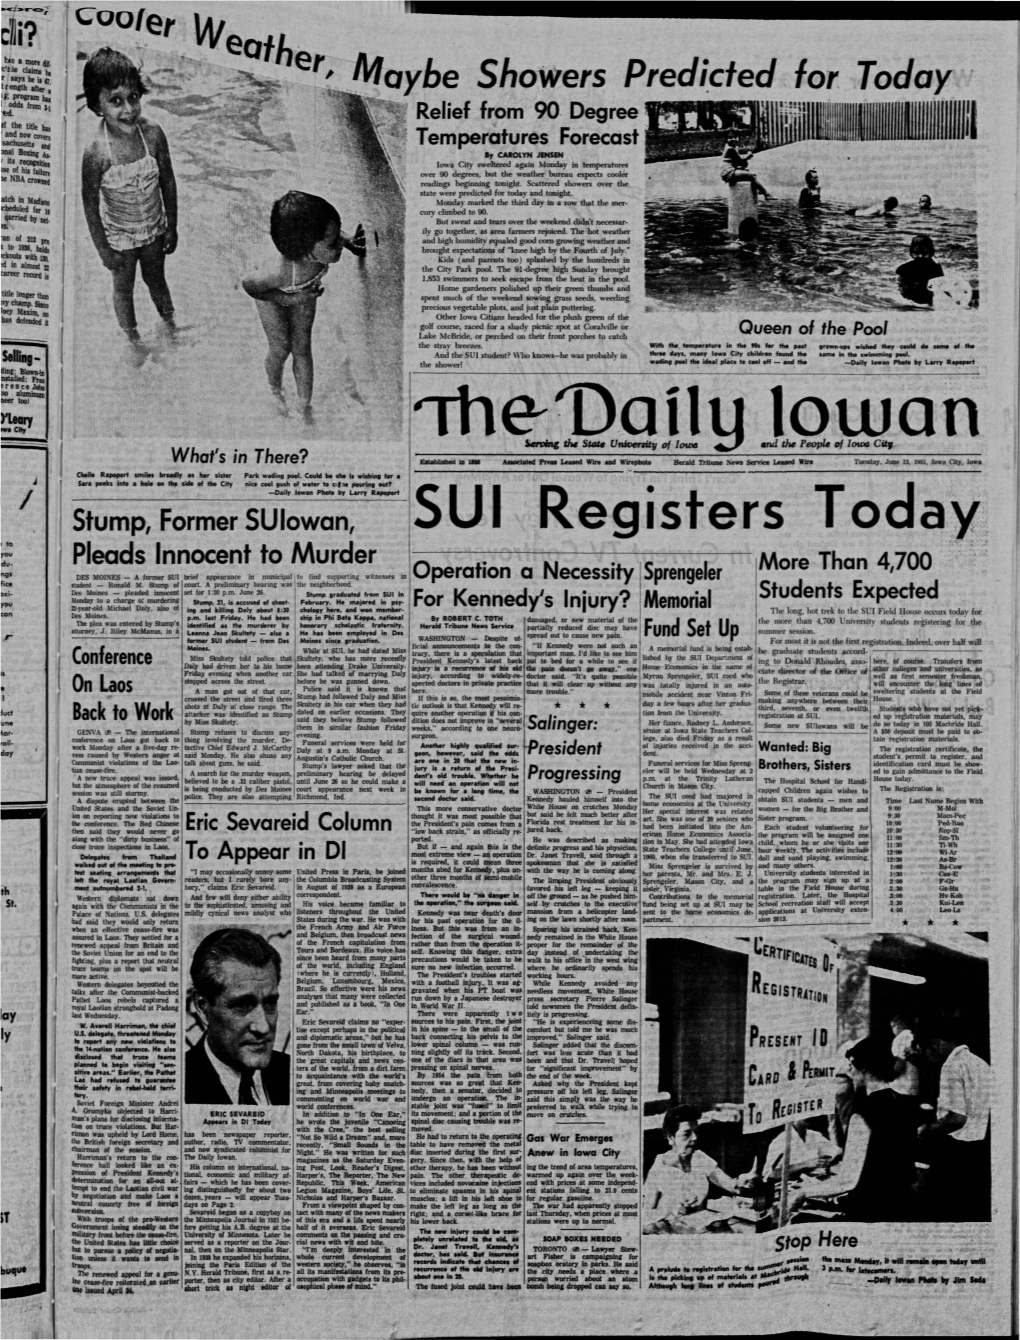 Daily Iowan (Iowa City, Iowa), 1961-06-13